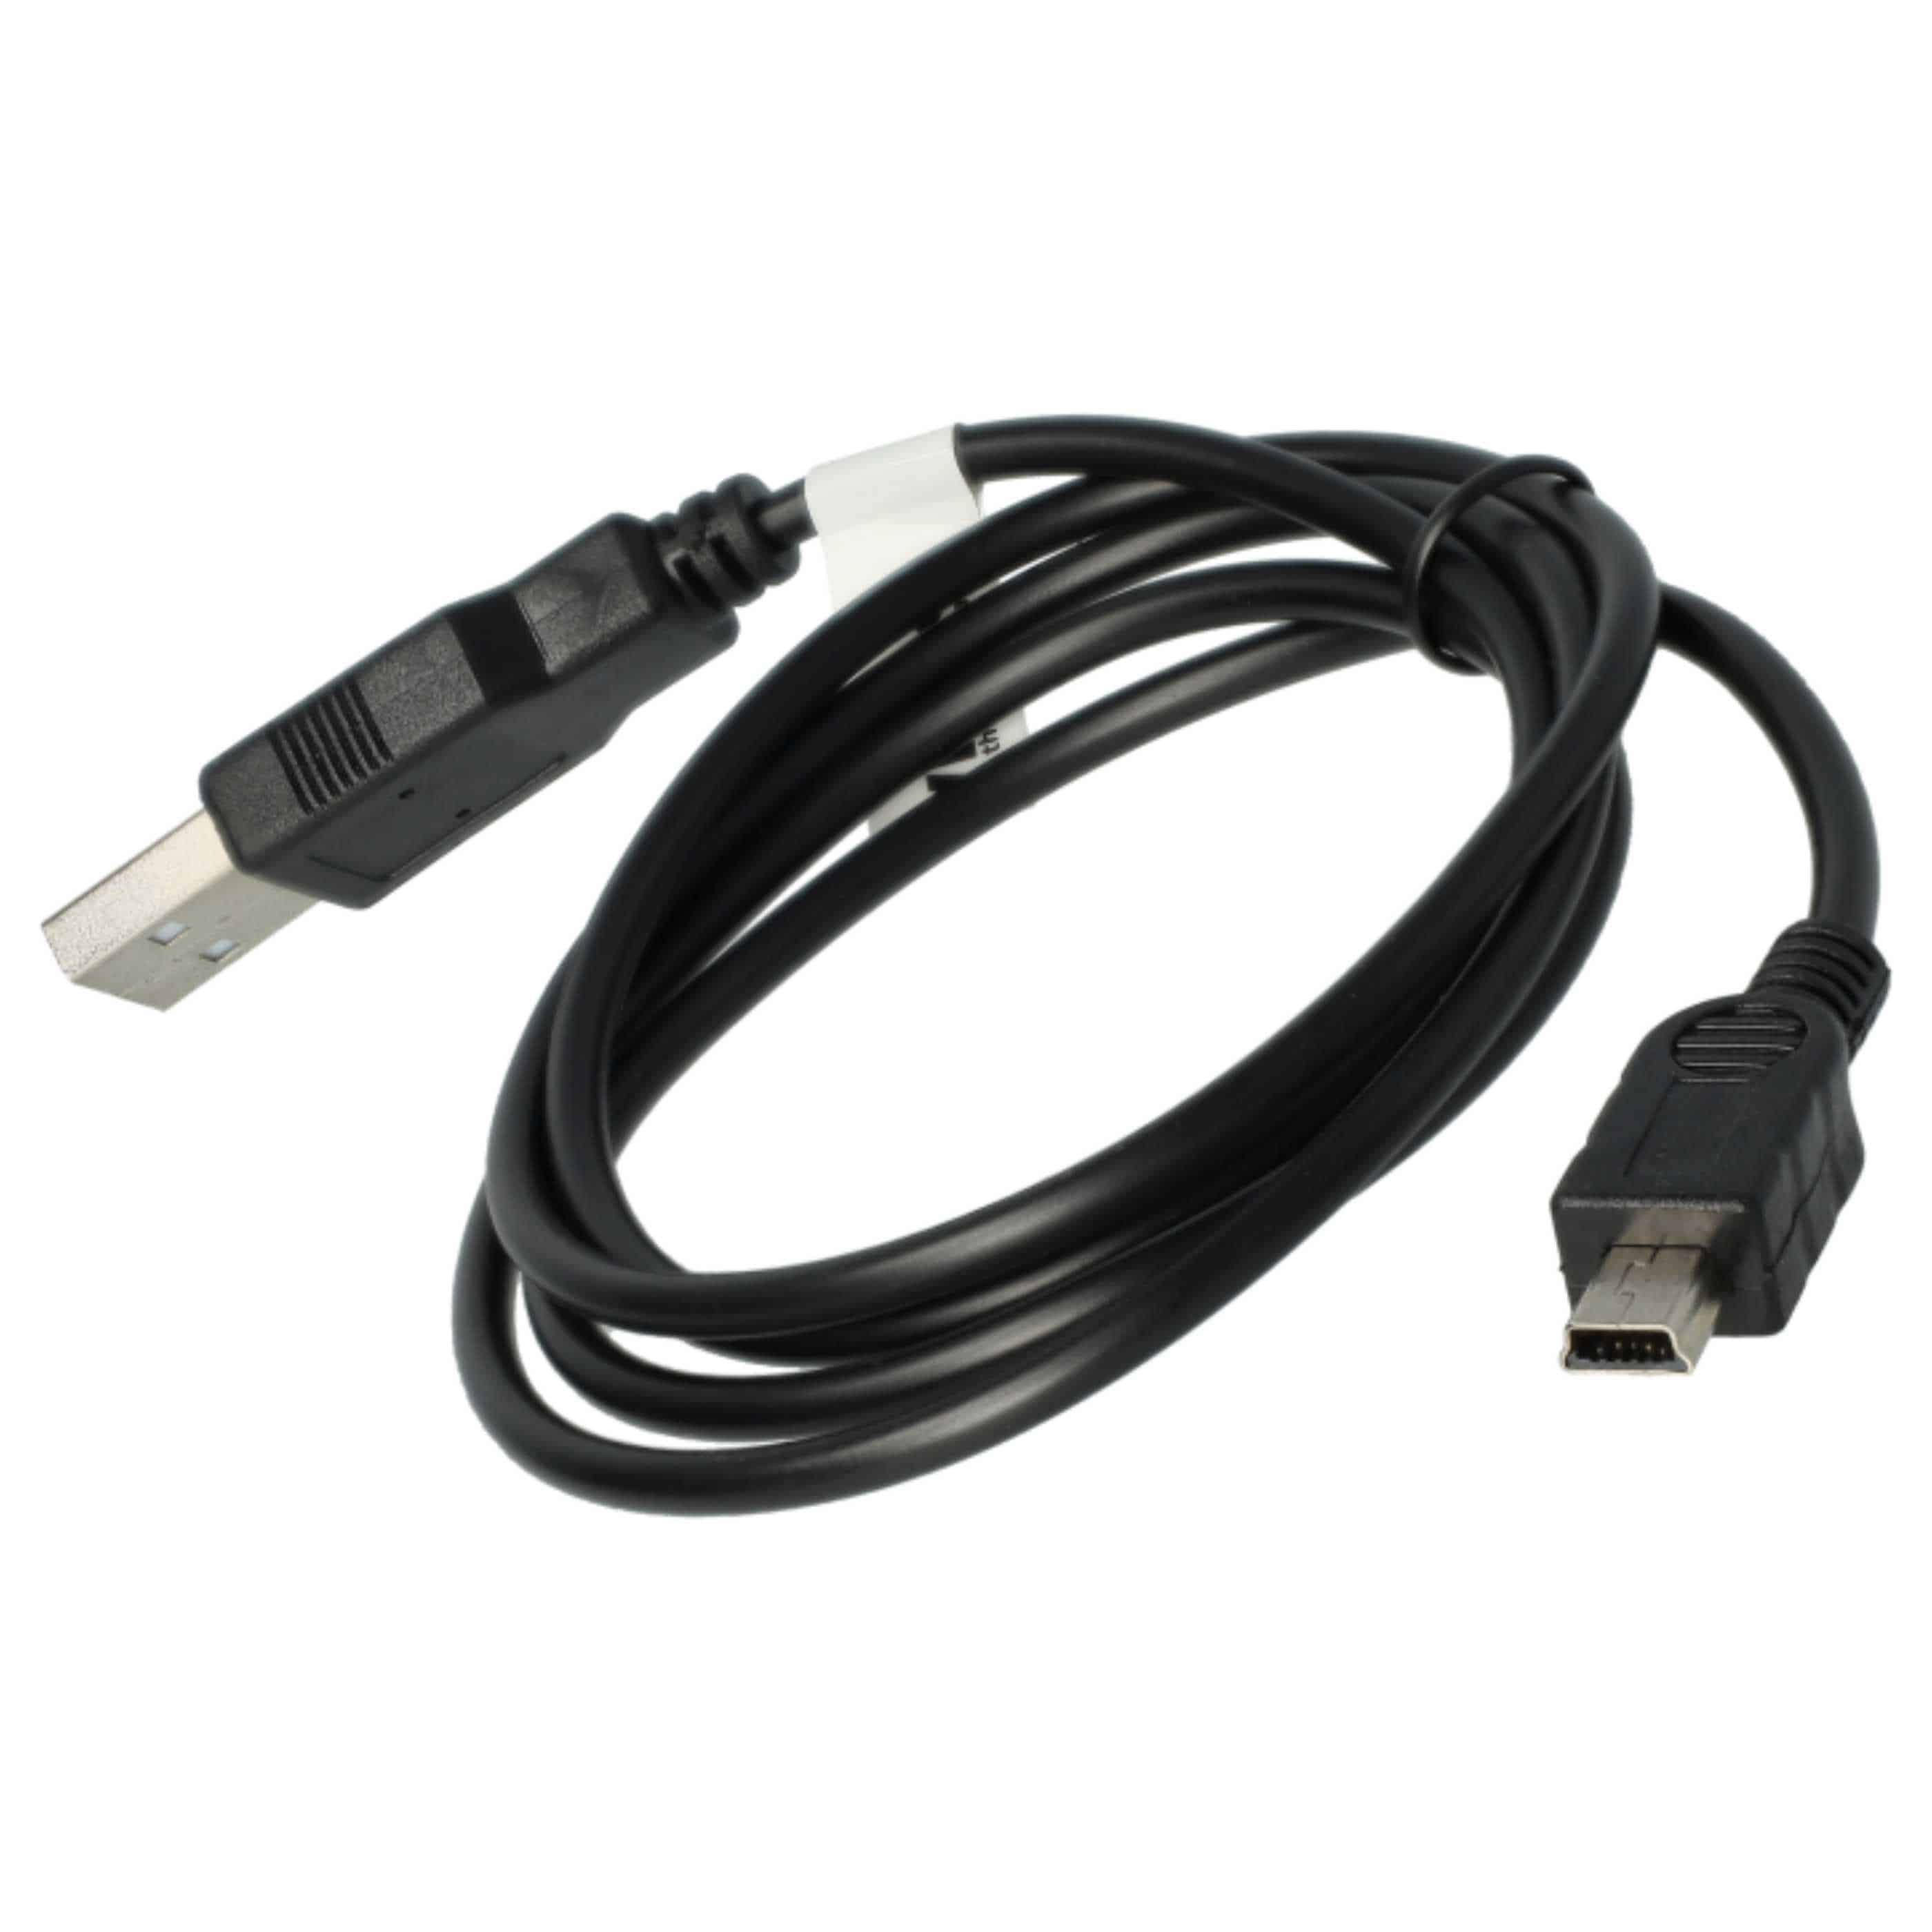 USB Datenkabel Ladekabel 2in1 passend für Nokia E51 Handy - 100cm